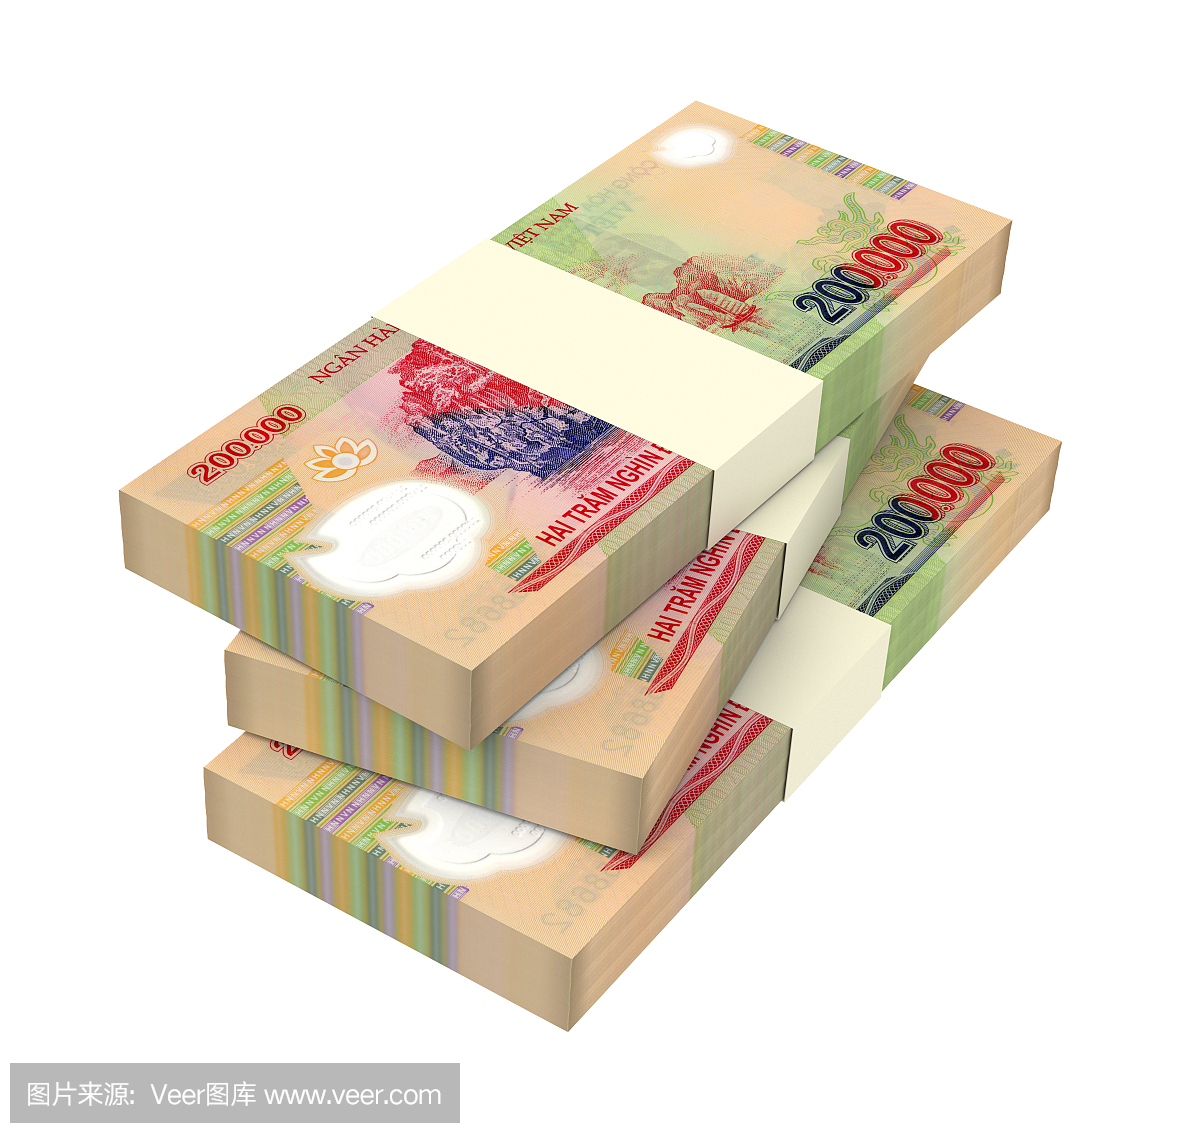 越南货币,越南货币单位,越南钞票,越币